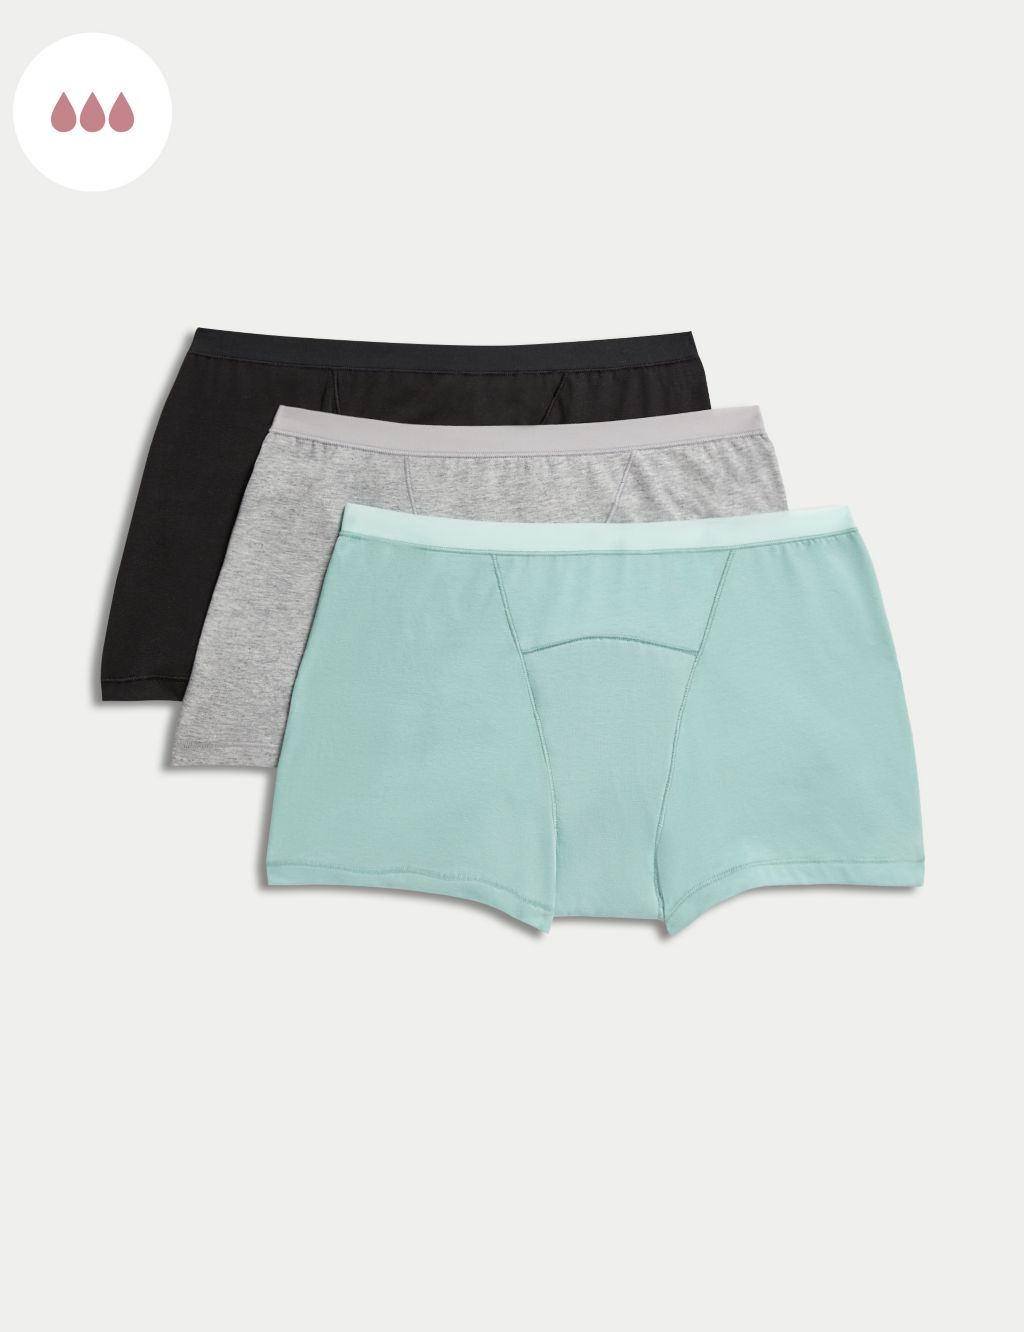 • @kmartaus Period Underwear • ➡️ Swipe #kmart #kmartaus #everydaykmart